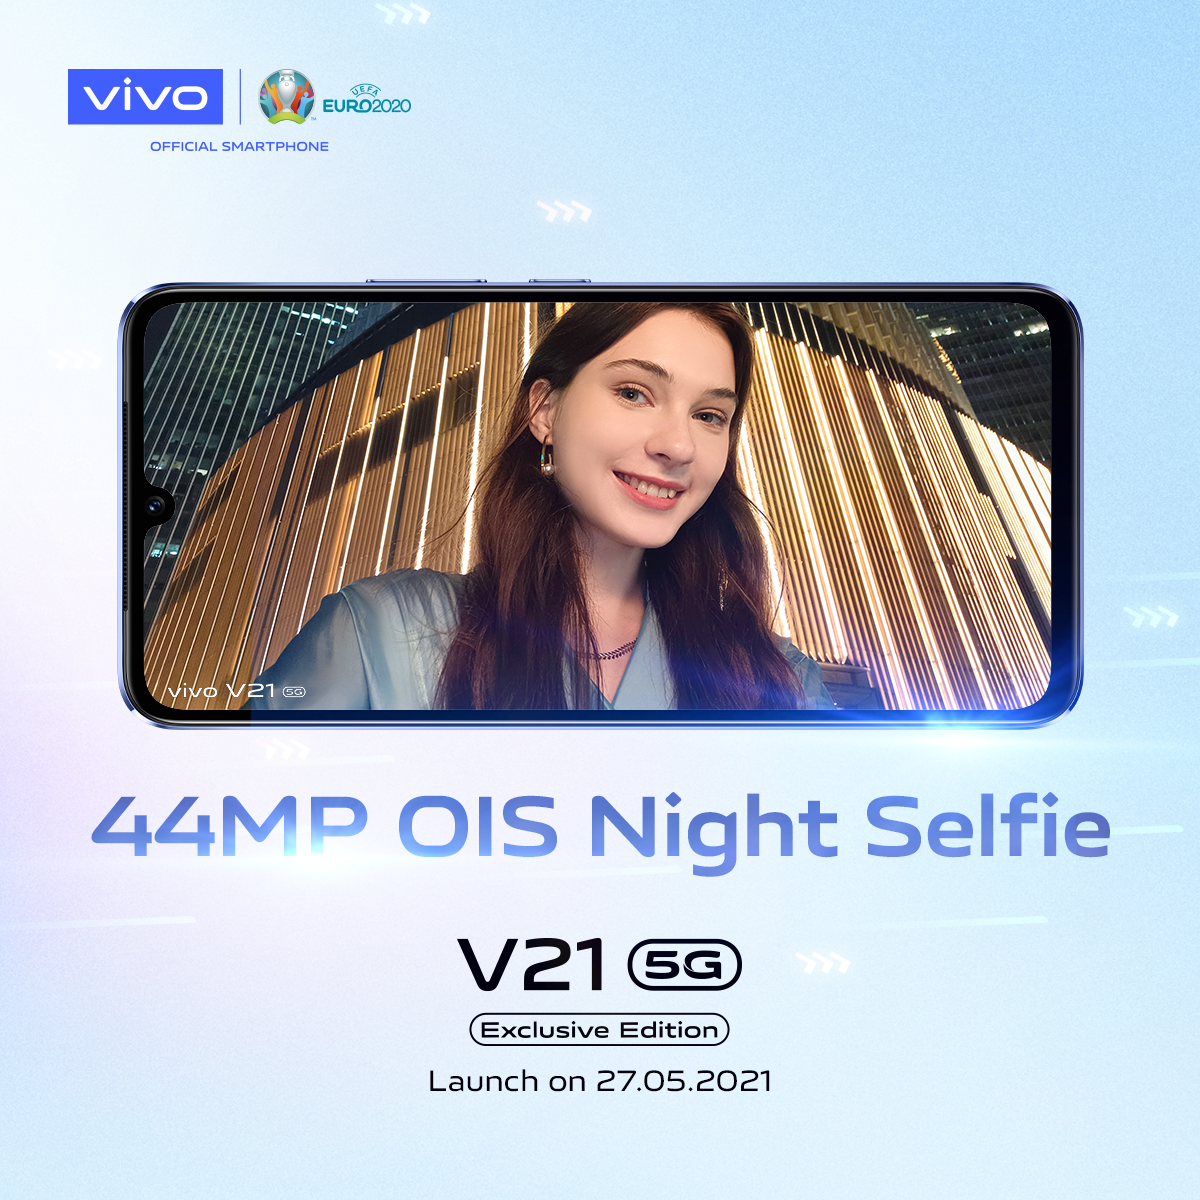 vivo v21 5g 44mp selfie camera